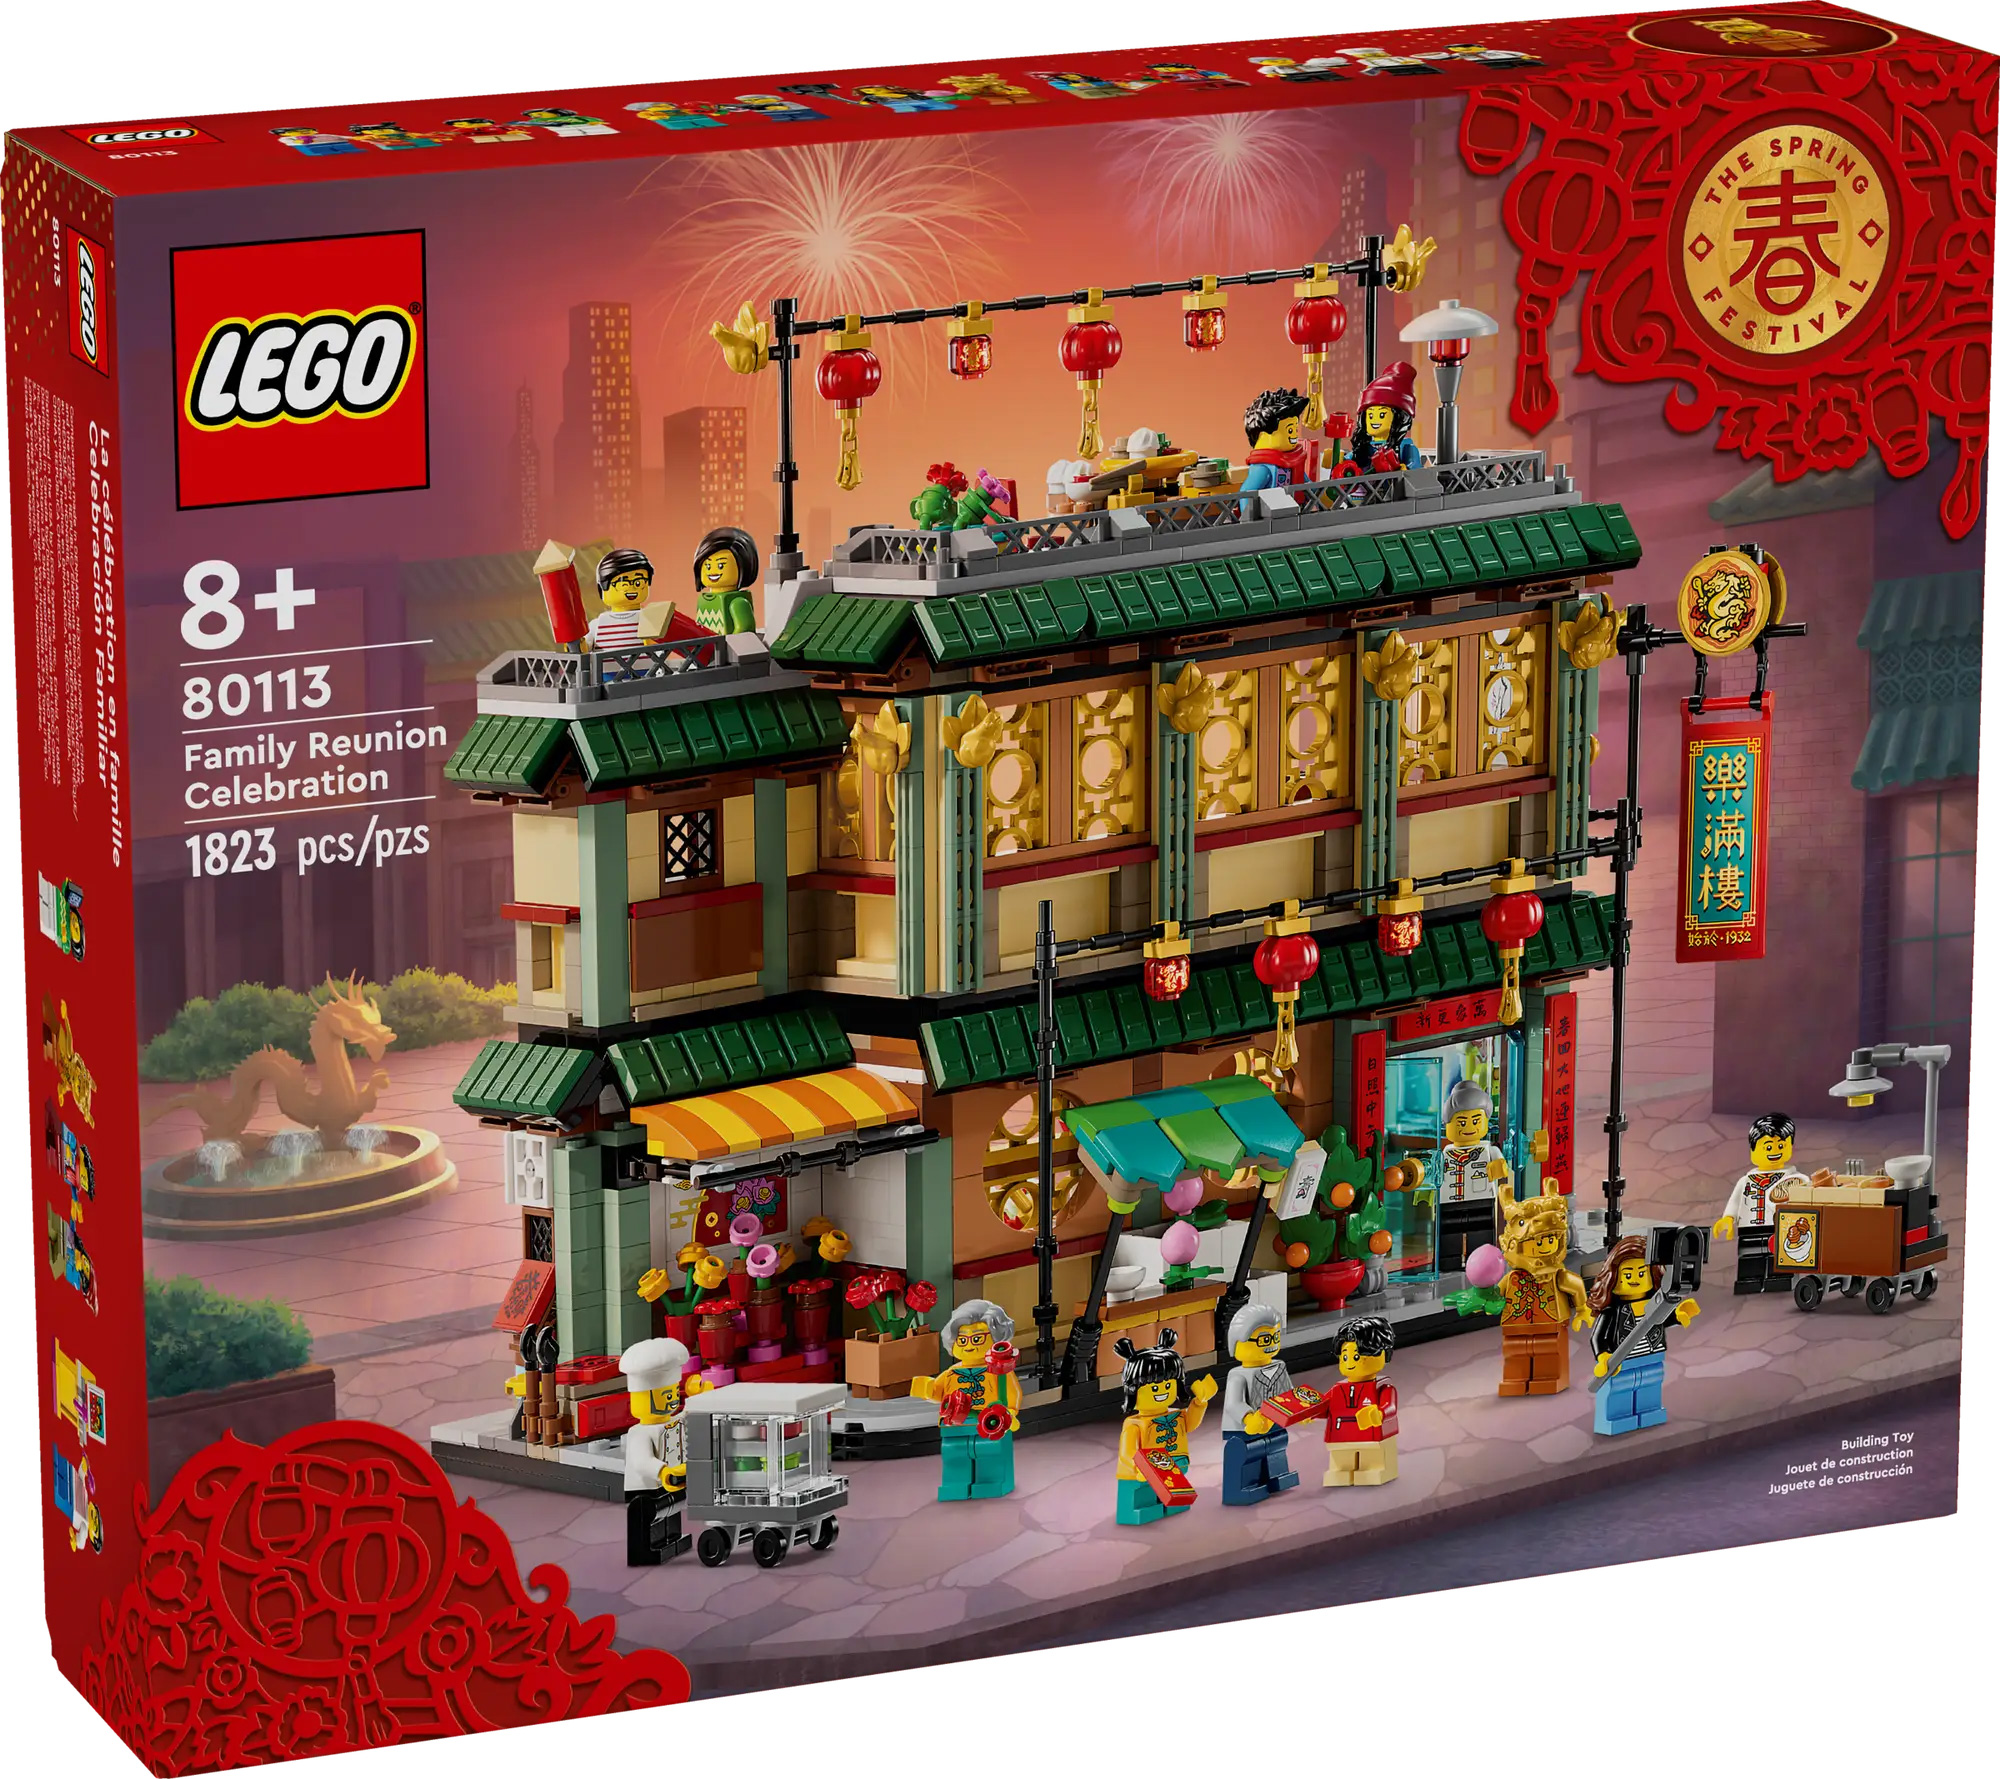 LEGO présente un nouveau set Le Seigneur des Anneaux !